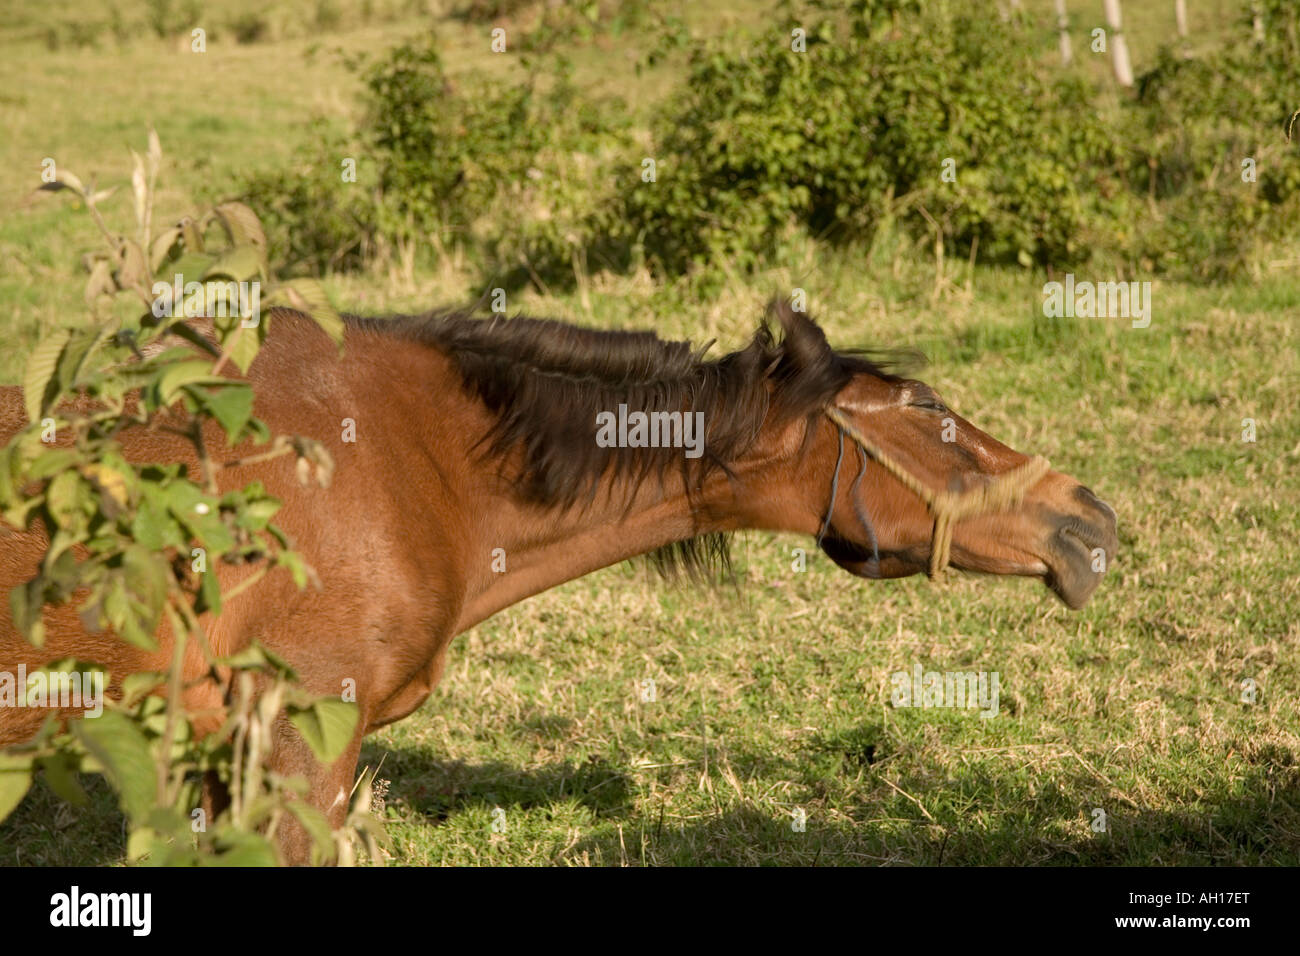 Horse sneezing Stock Photo